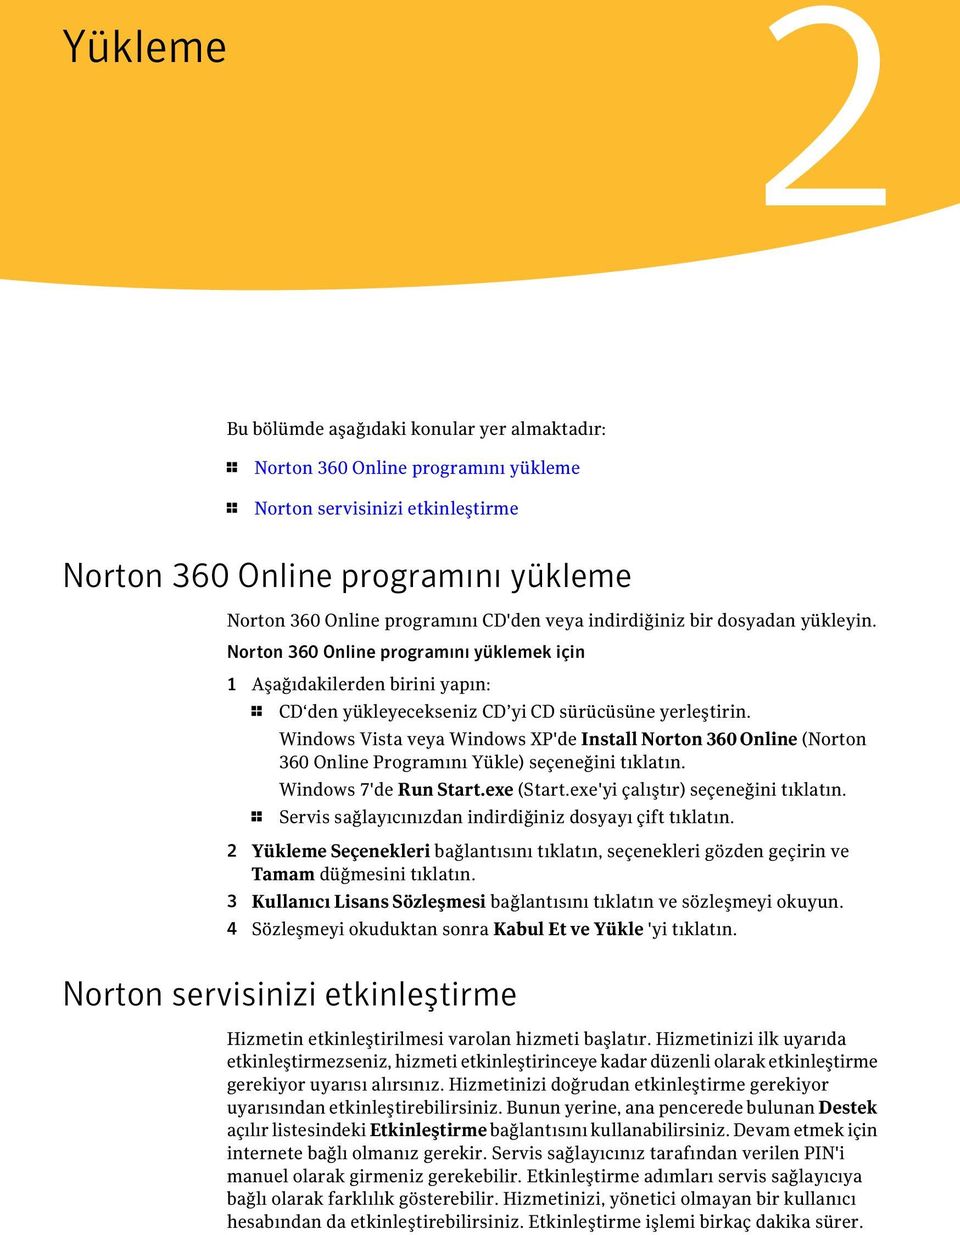 Windows Vista veya Windows XP'de Install Norton 360 Online (Norton 360 Online Programını Yükle) seçeneğini tıklatın. Windows 7'de Run Start.exe (Start.exe'yi çalıştır) seçeneğini tıklatın.